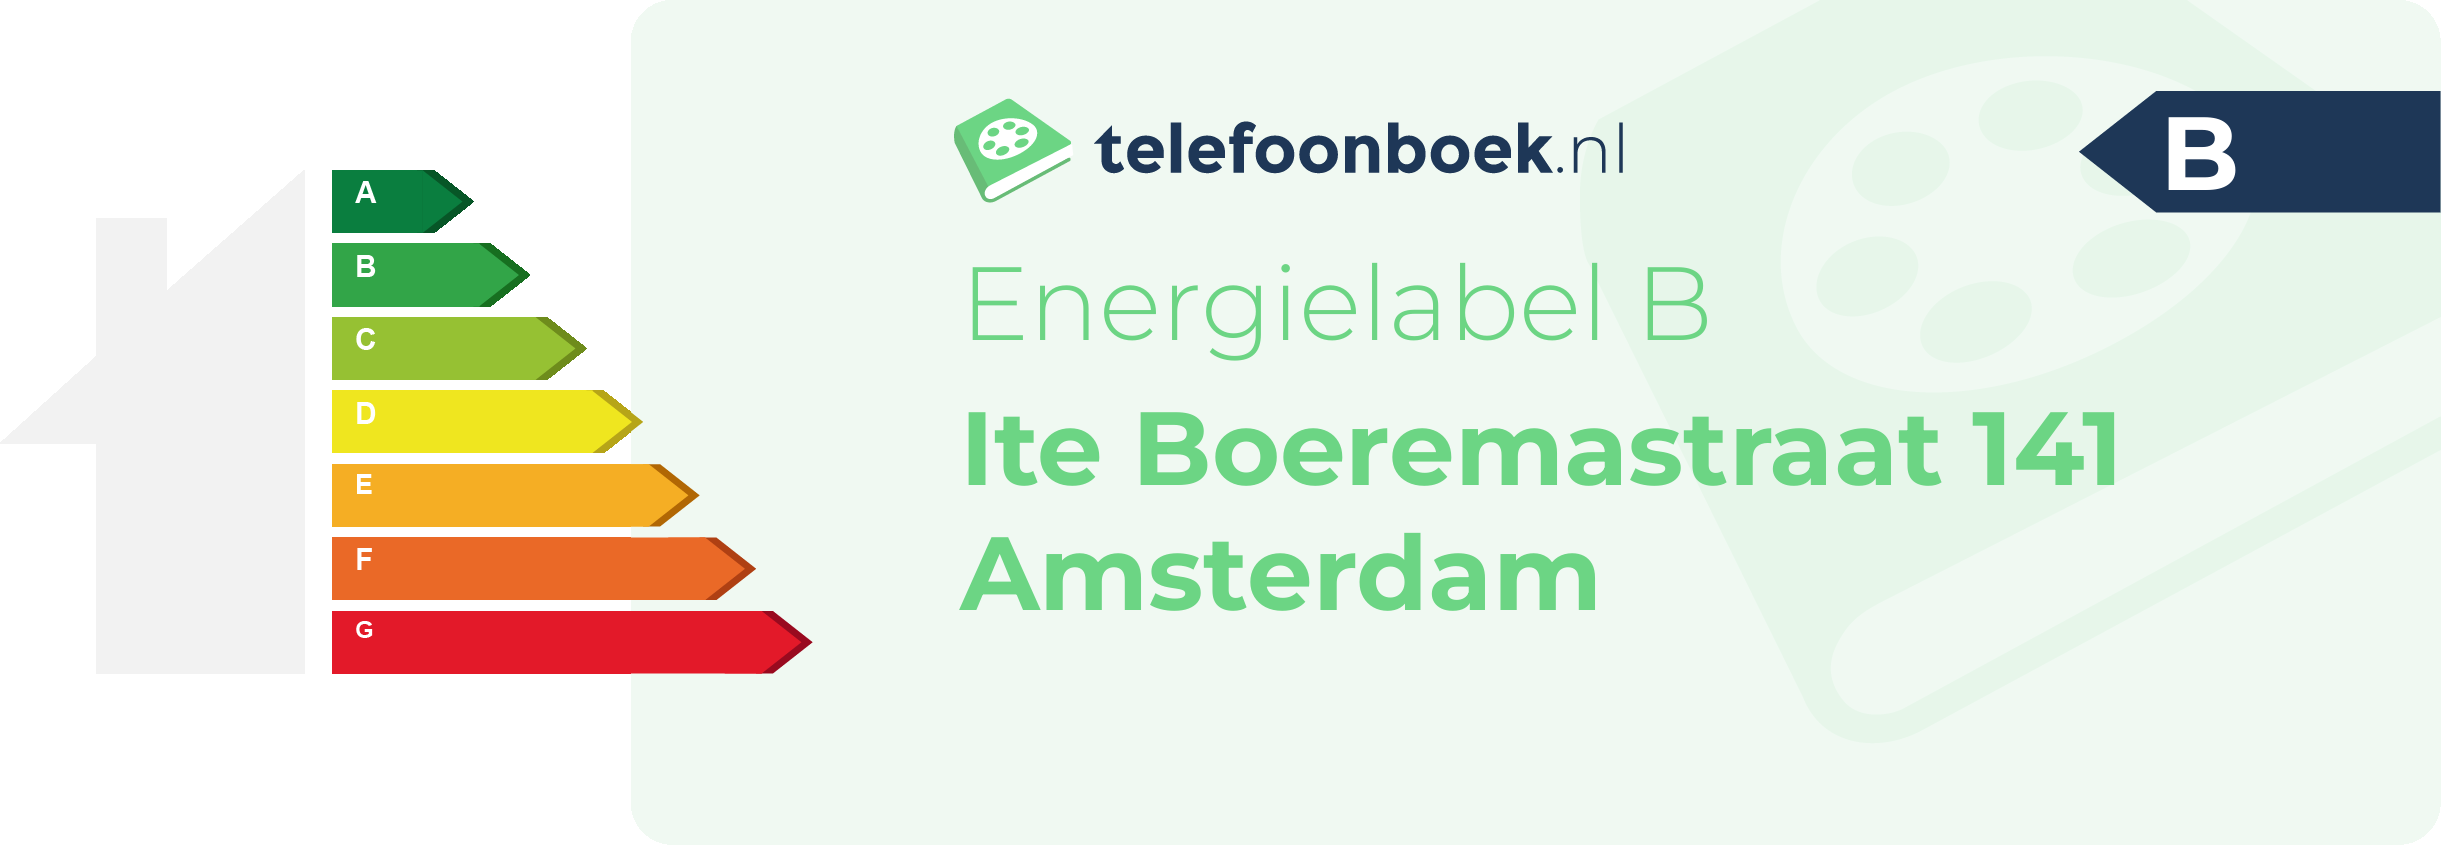 Energielabel Ite Boeremastraat 141 Amsterdam